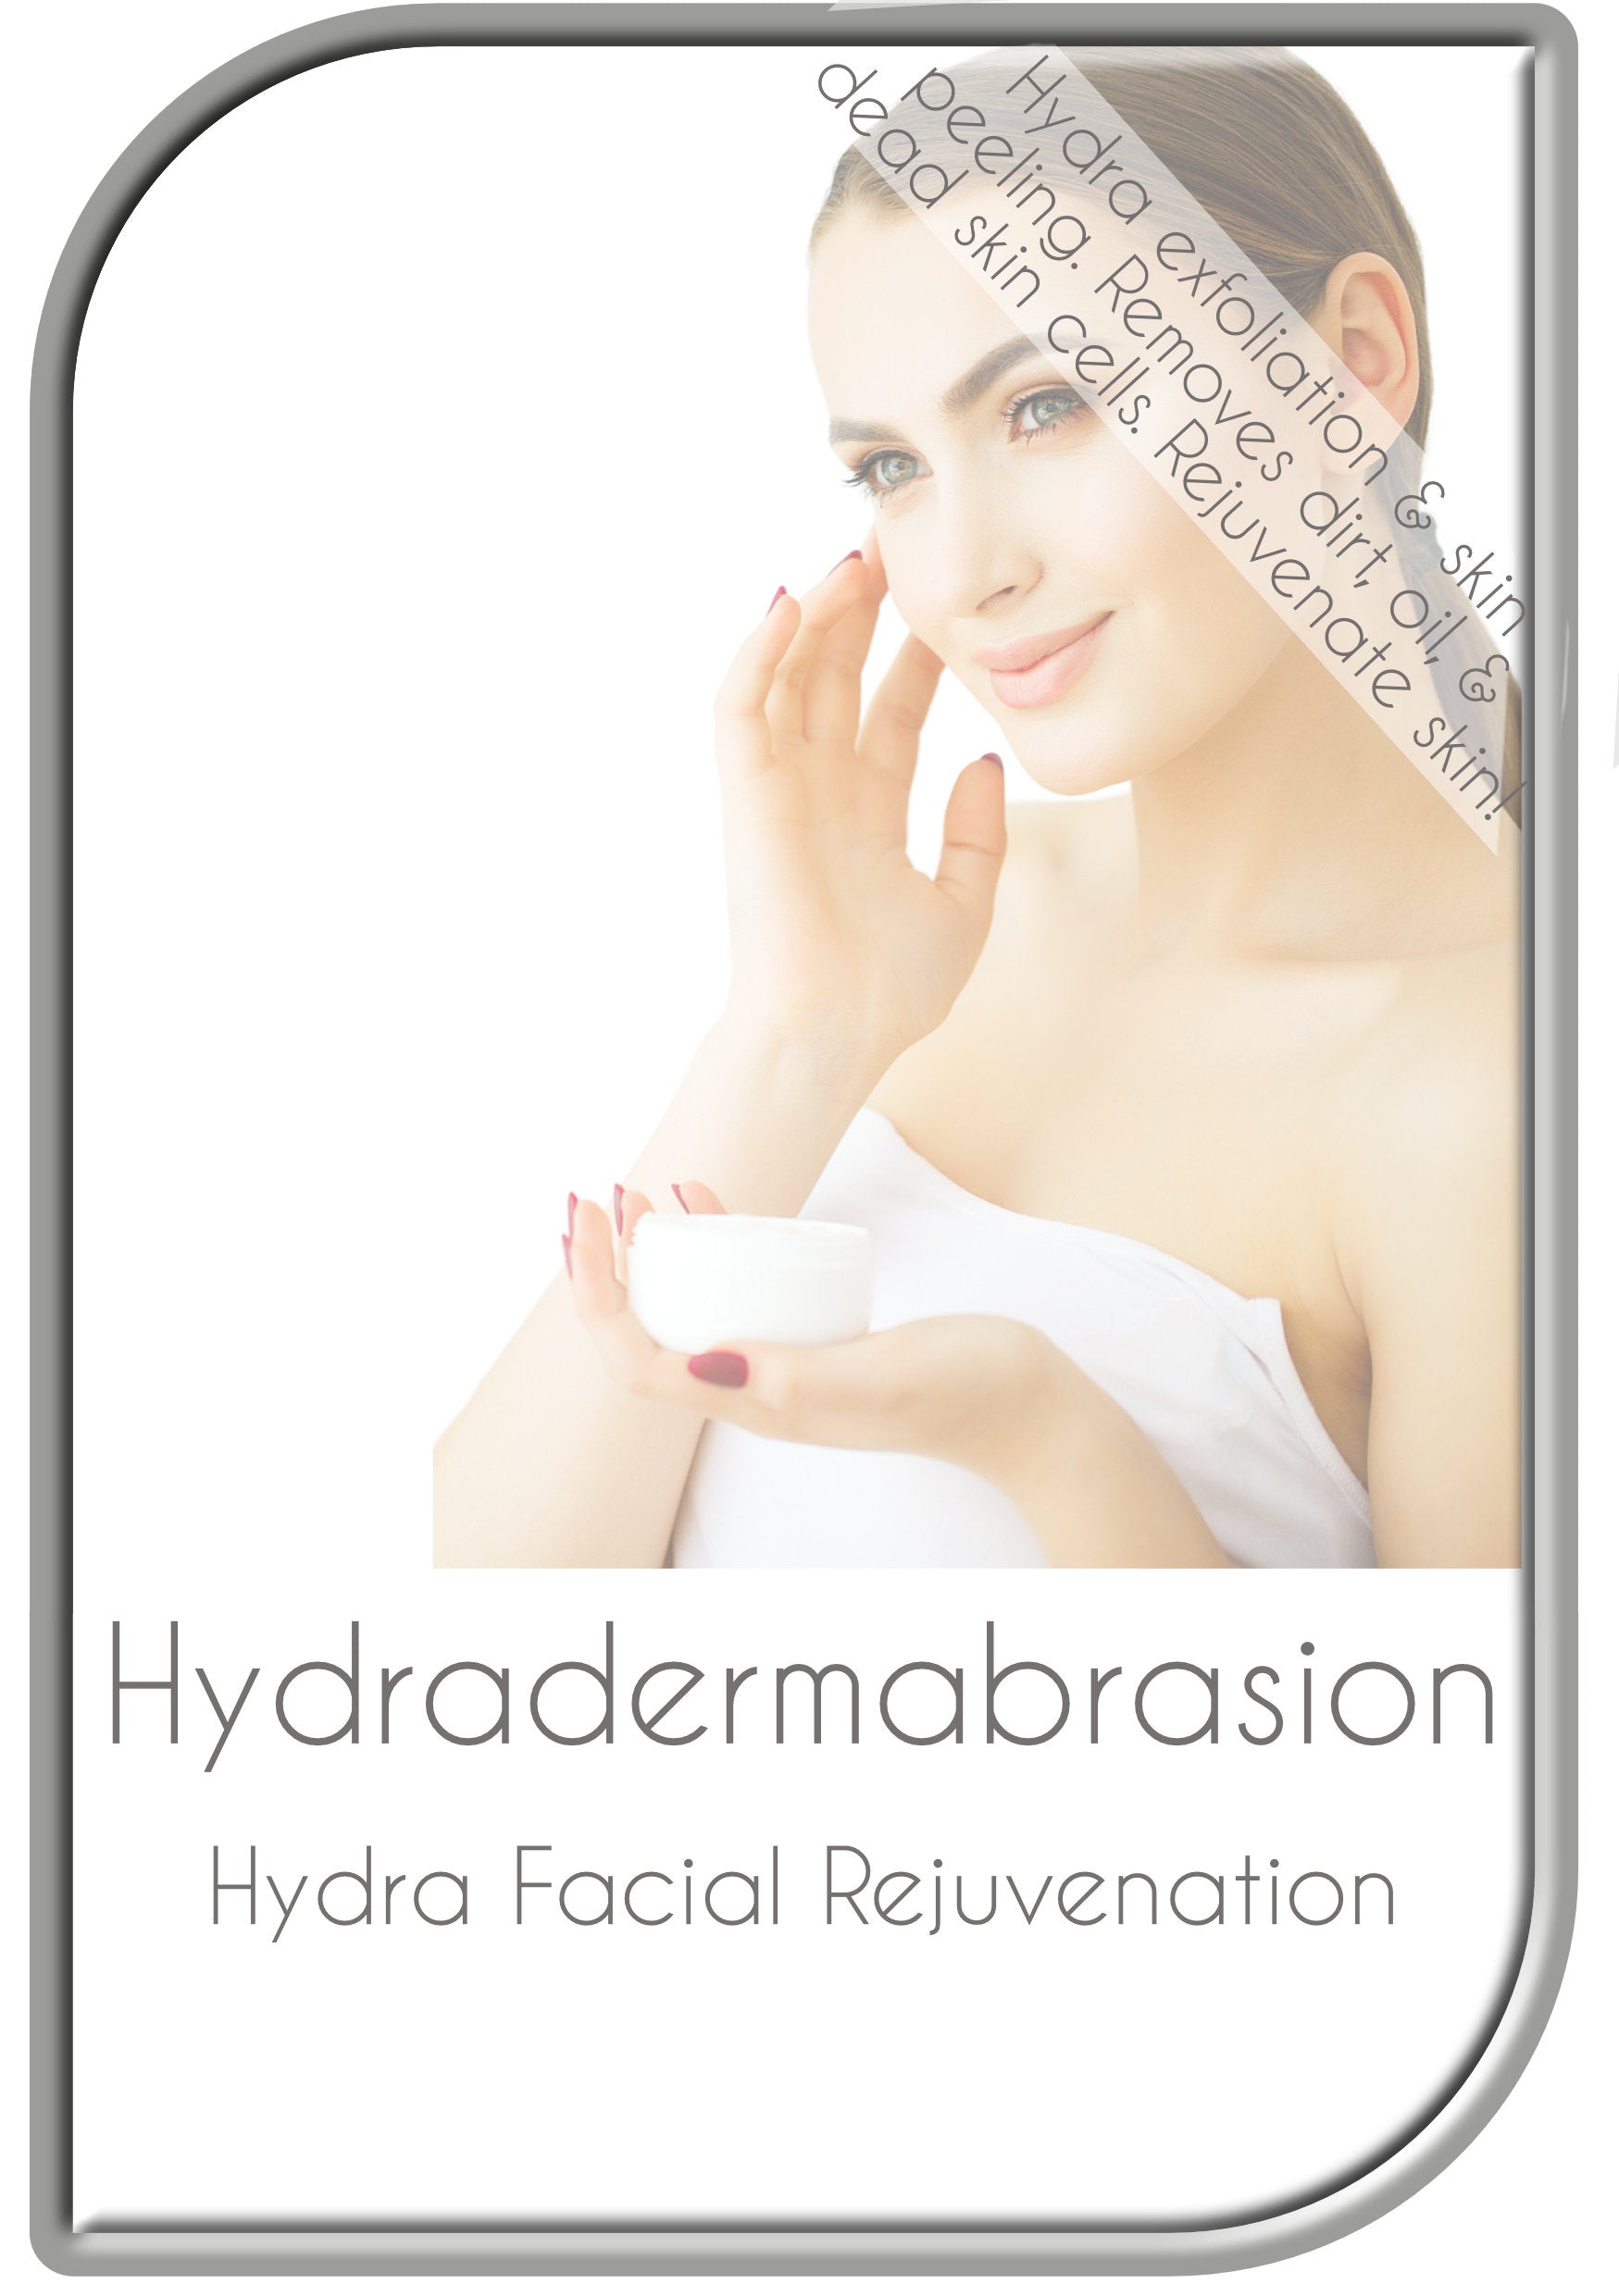 Hydradermabrasion Facial